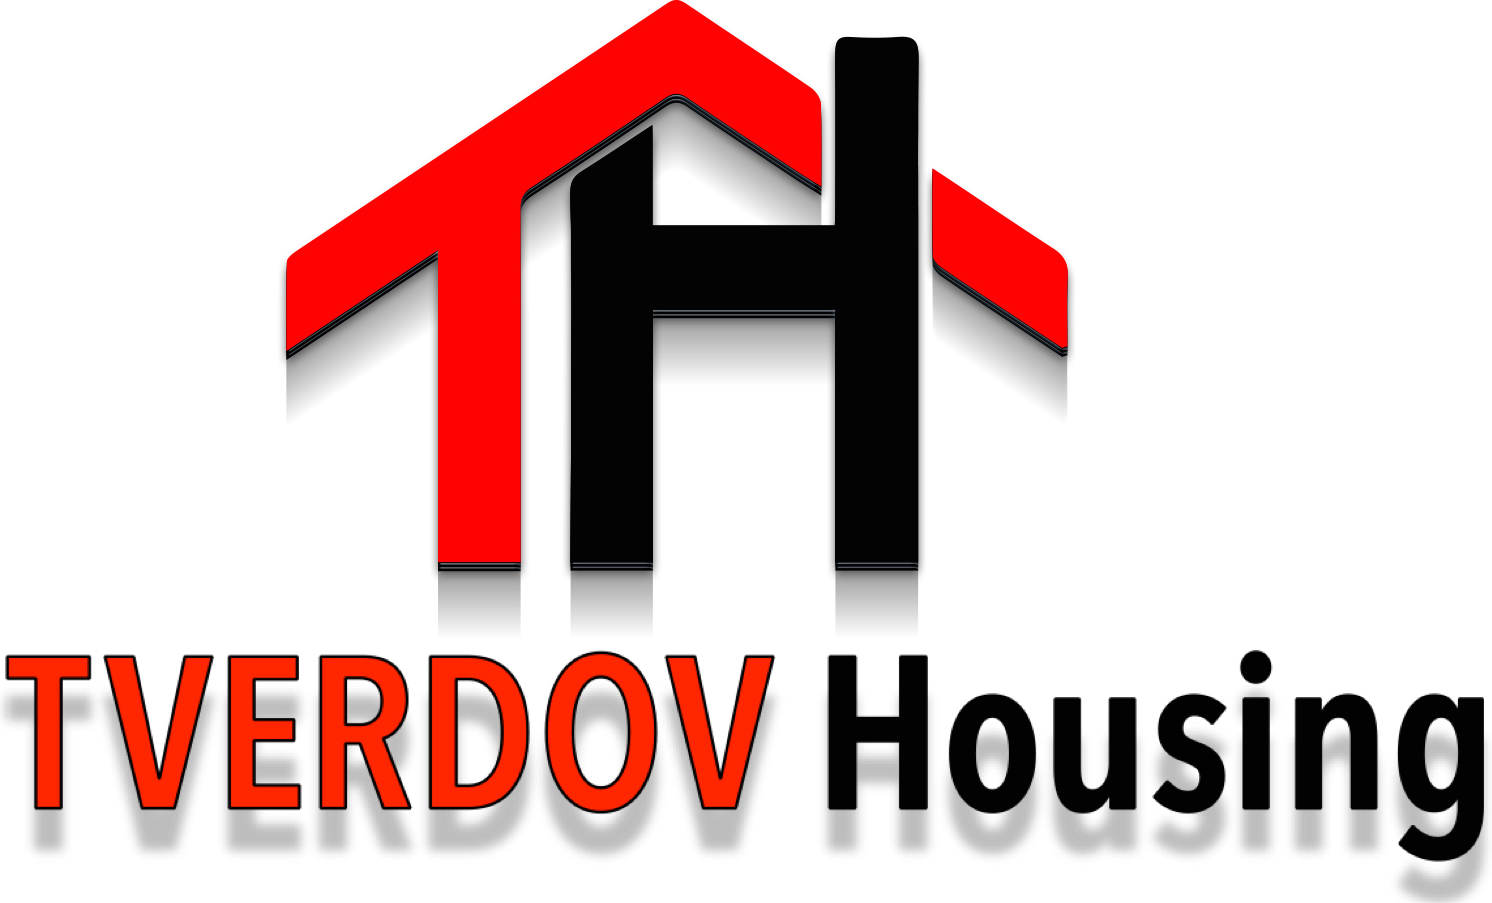 Tverdov Housing Logo